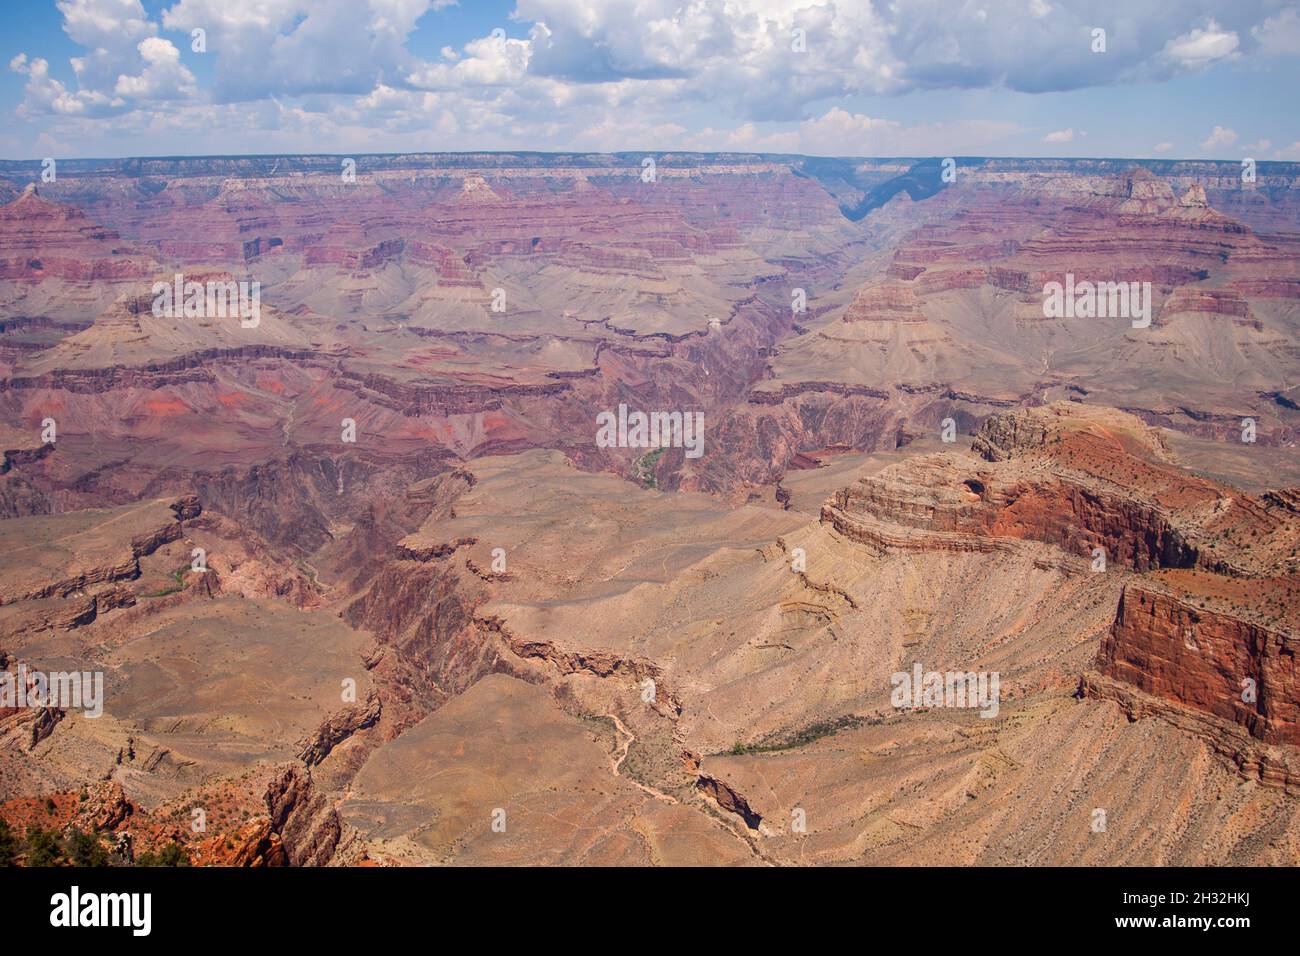 Ampio spazio del Grand Canyon nelle giornate di sole, paesaggio mozzafiato, vista panoramica, panorama mozzafiato, Parco Nazionale del Grand Canyon, Arizona Foto Stock